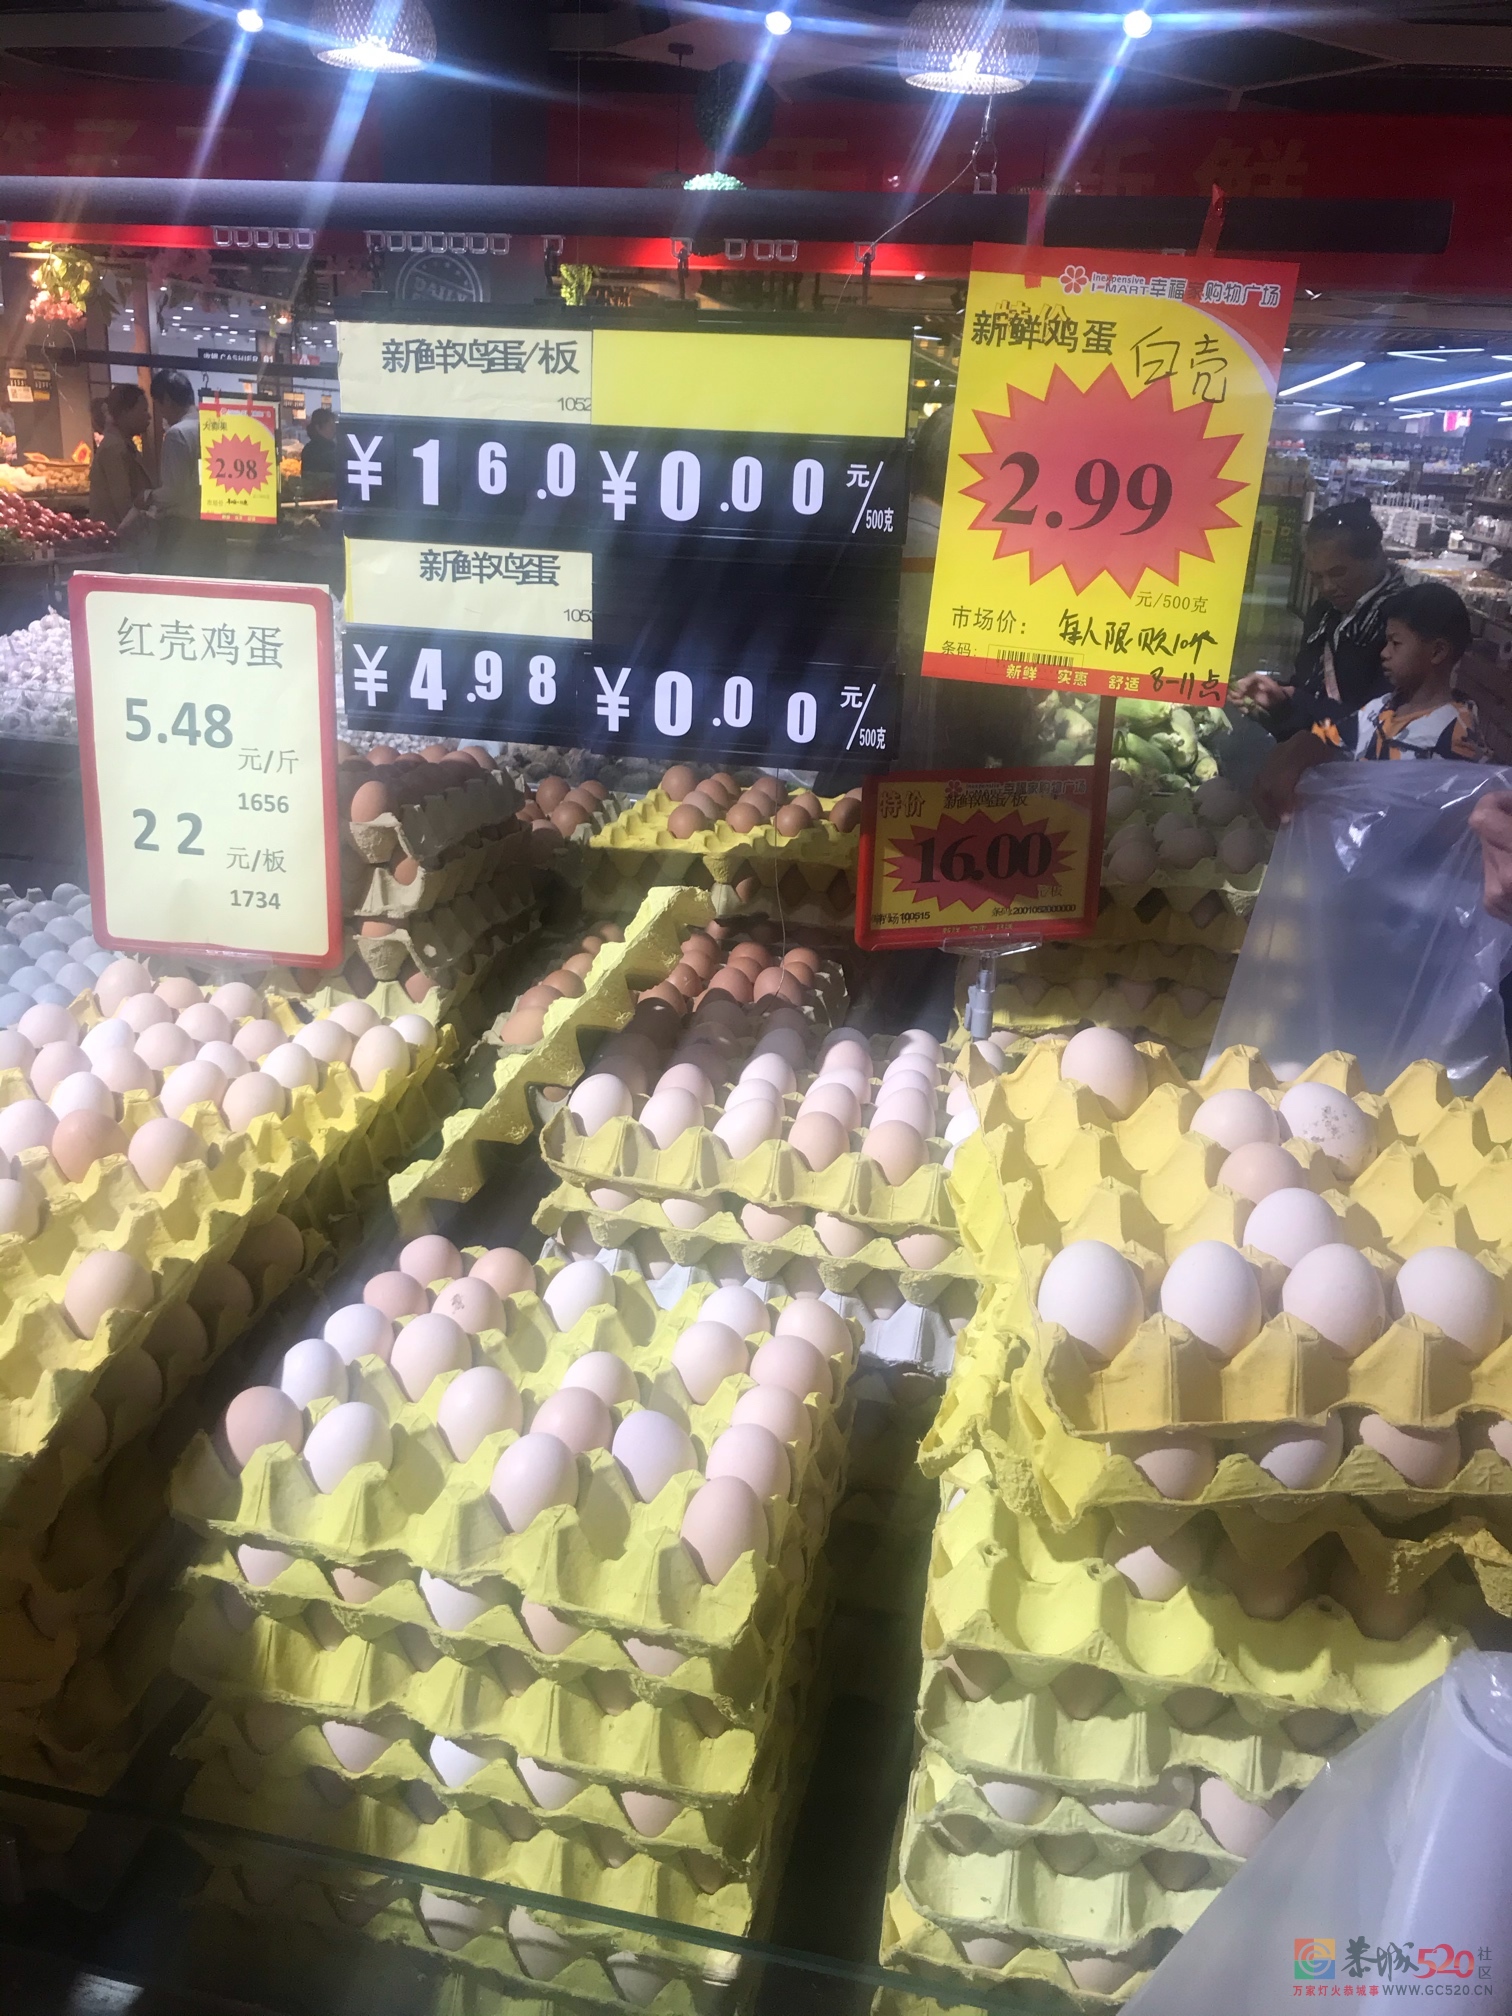 一大早跑来超市买鸡蛋410 / 作者:闲不住a / 帖子ID:279110